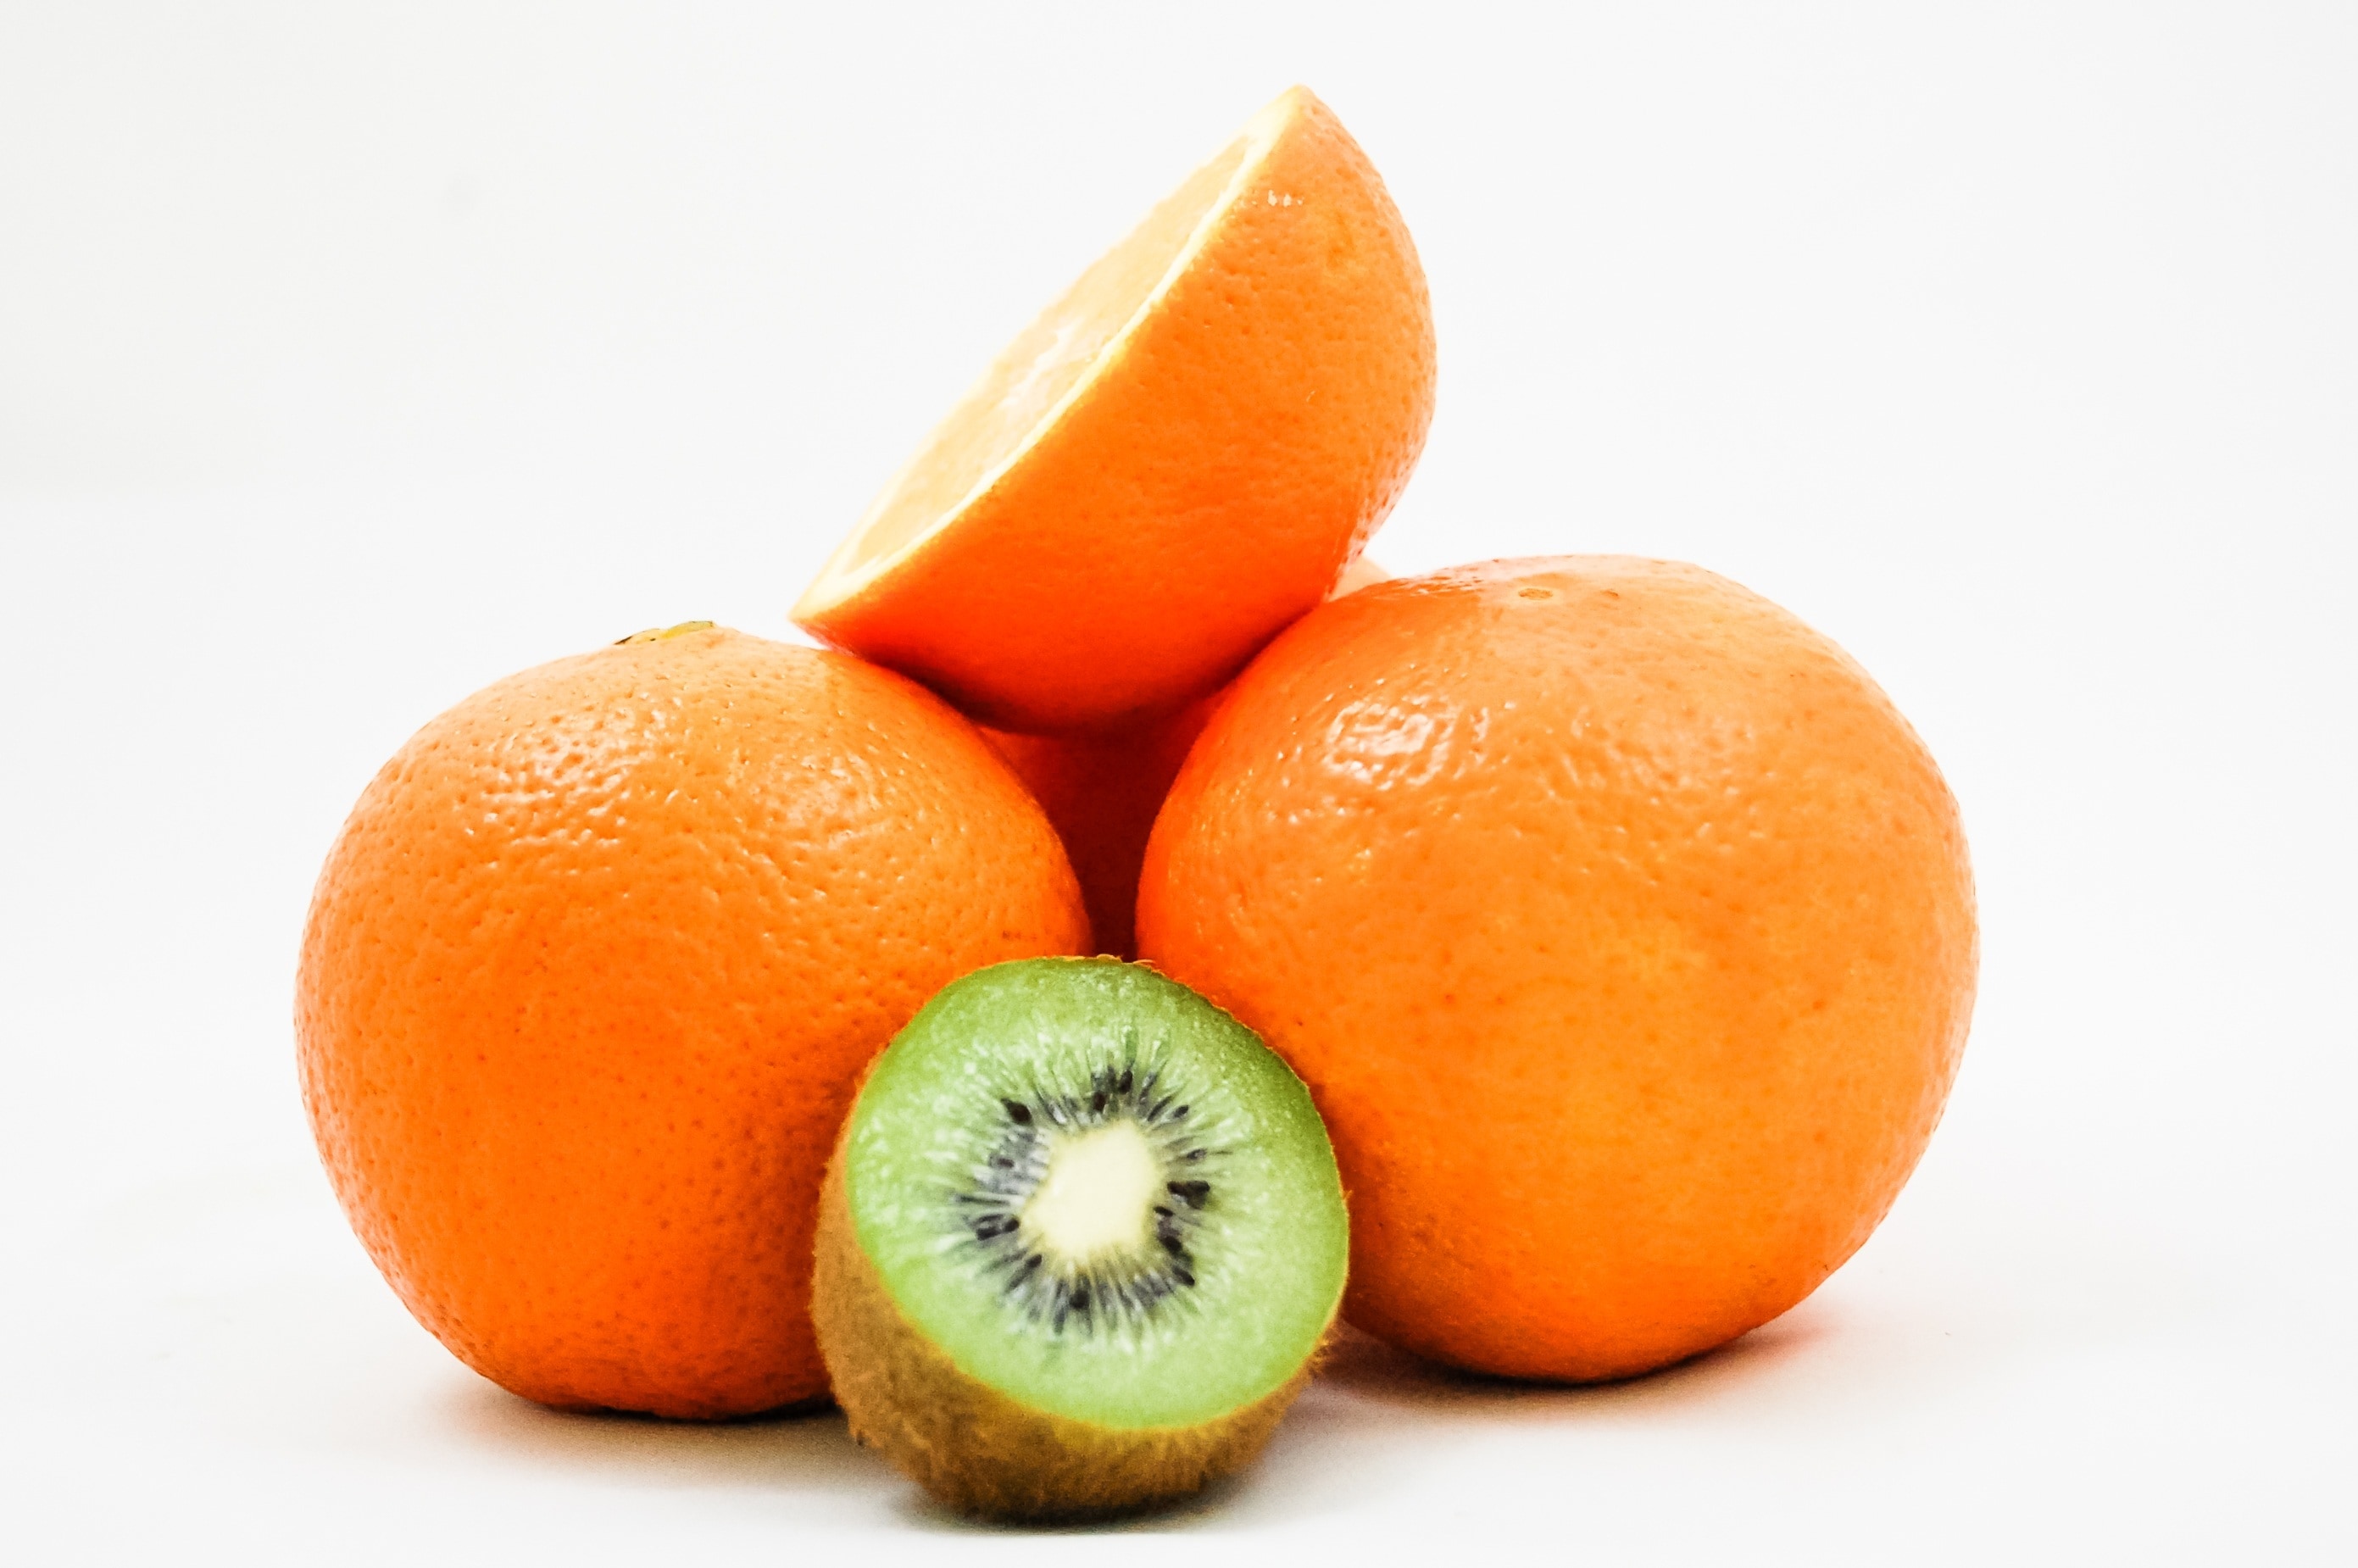 kiwi and oranges